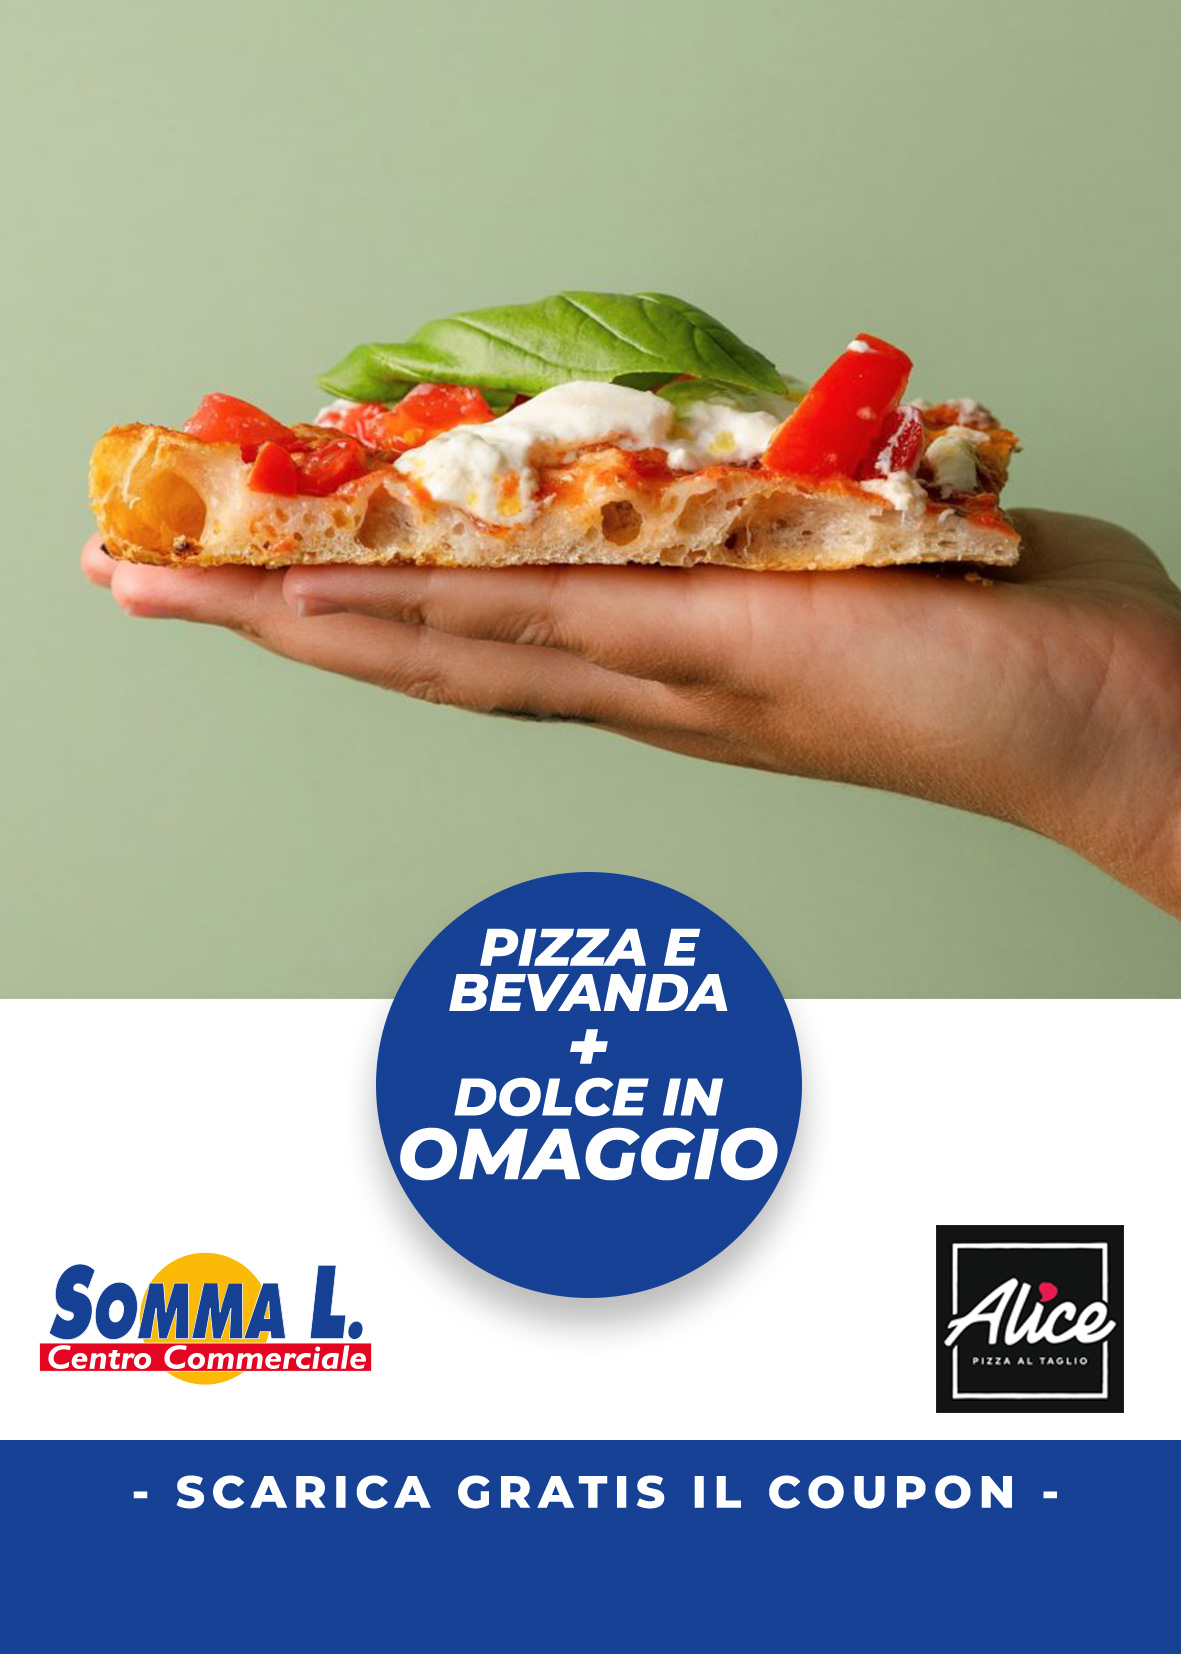 Coupon Sconto Alice Pizza: Acquista Pizza e Bevanda e avrai il dolce in omaggio! Vieni al Centro Commerciale Somma